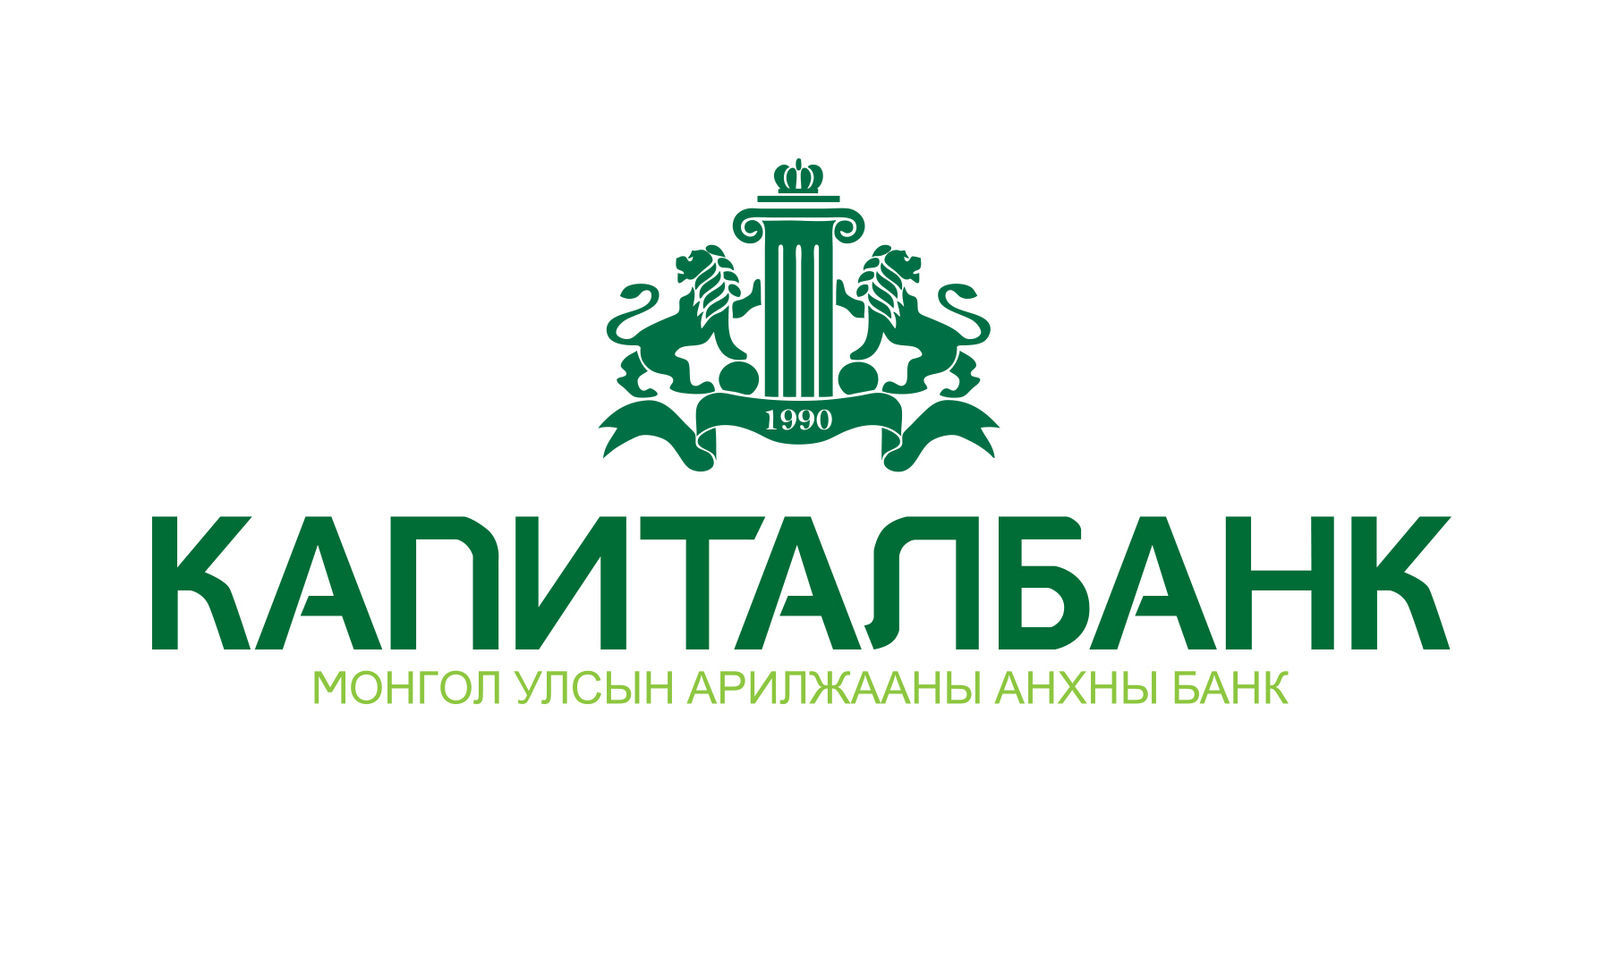 Сайт капитал банк узбекистан. Капиталбанк лого. Капитал банк Узбекистан. Логотип Капиталбанк Узбекистан. Логотип АКБ Капиталбанк.